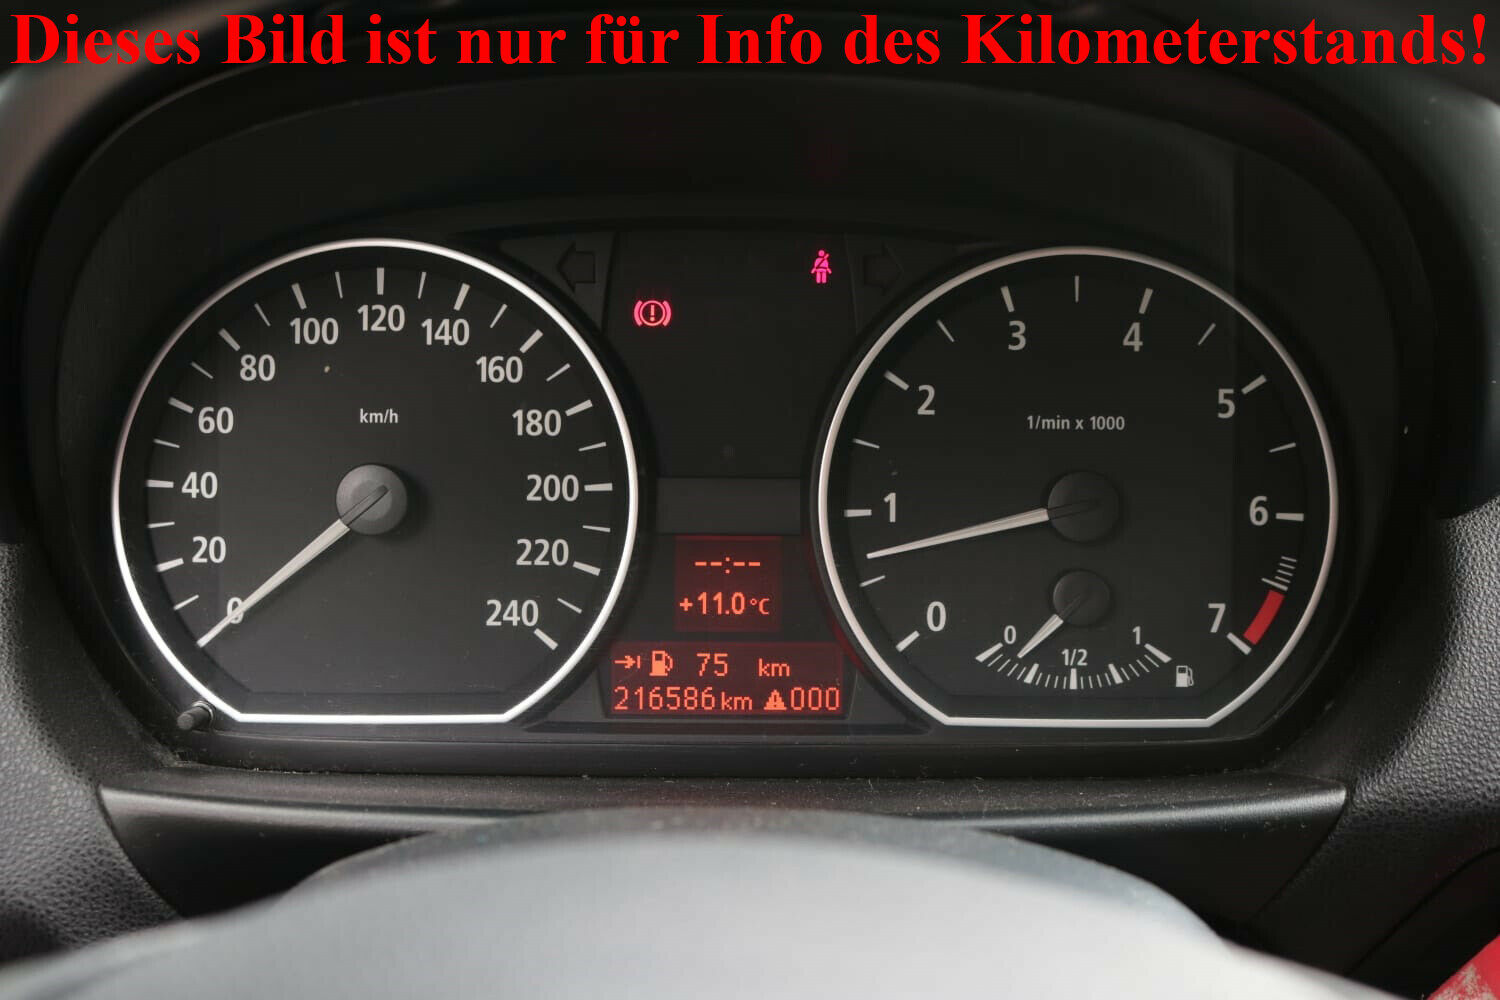 Motorabdeckung BMW 1er (E81, E87) 34477 km